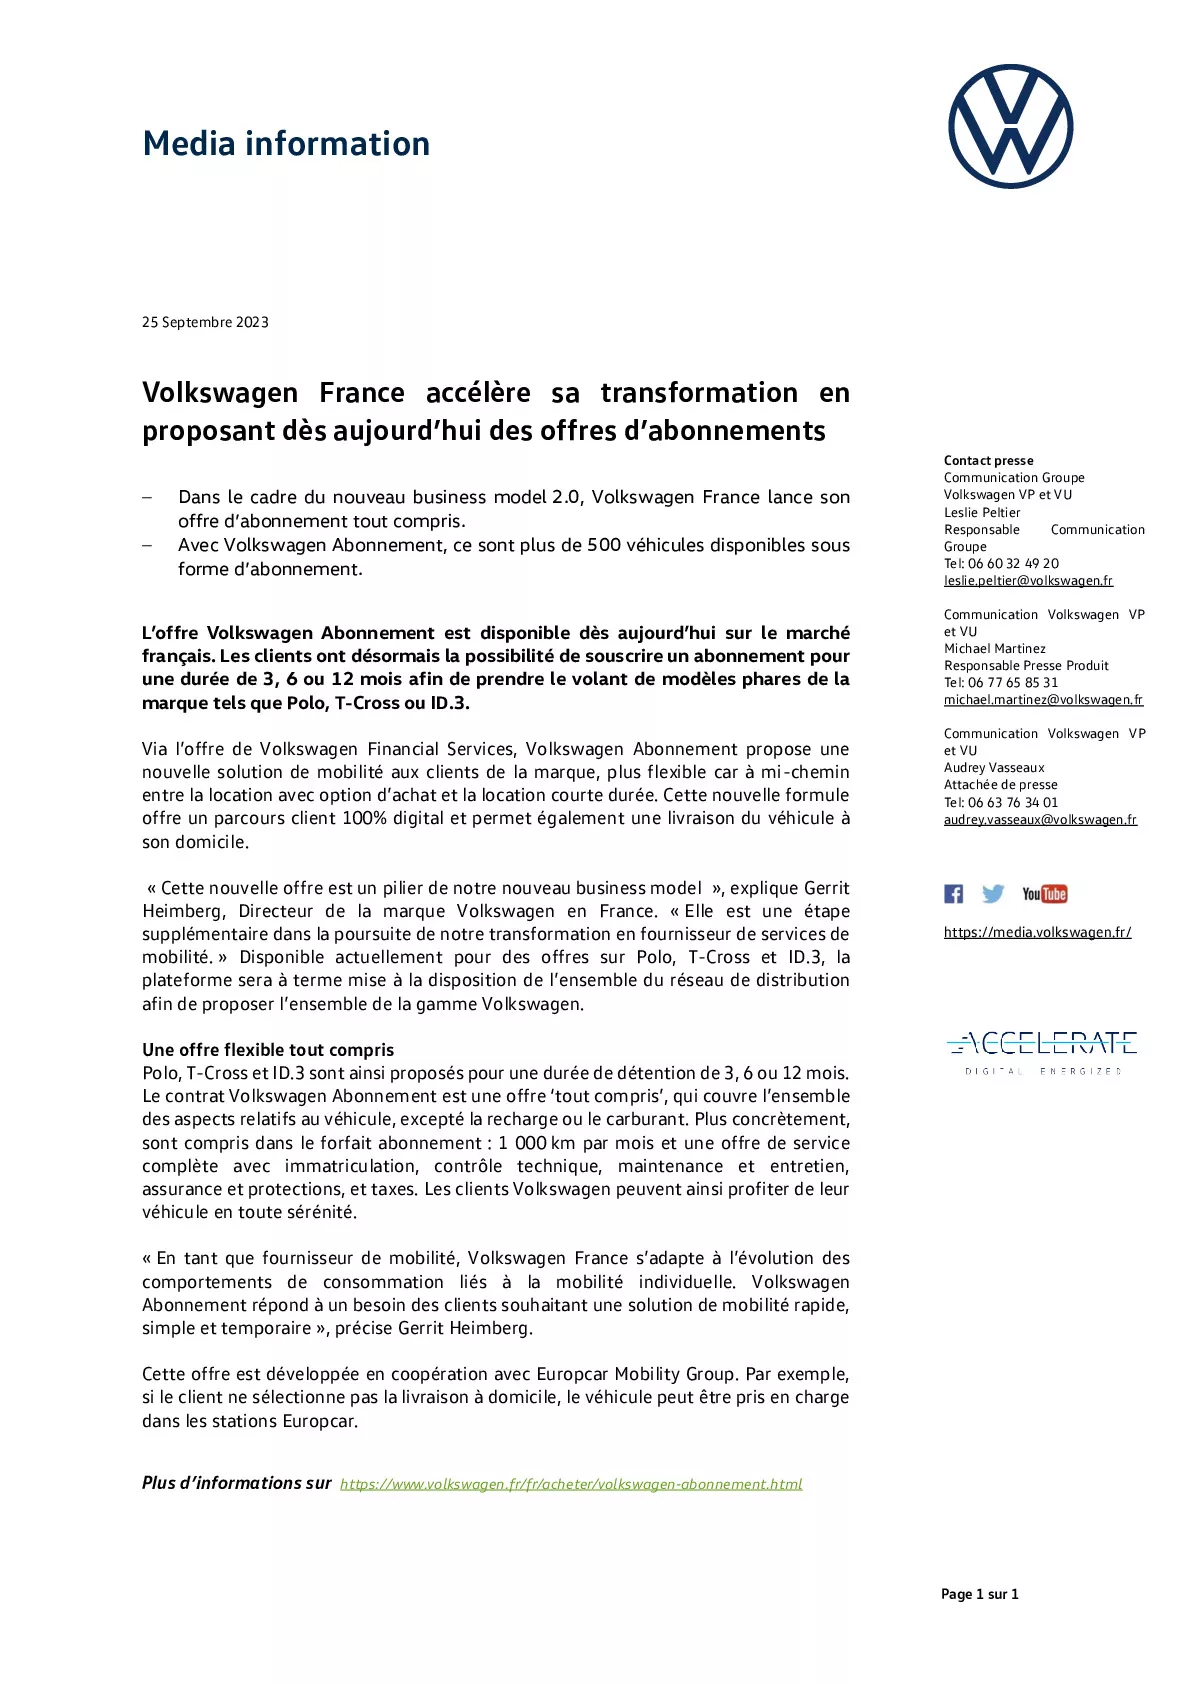 Volkswagen France accélère sa transformation en proposant dès aujourdhui des abonnements automobiles-pdf